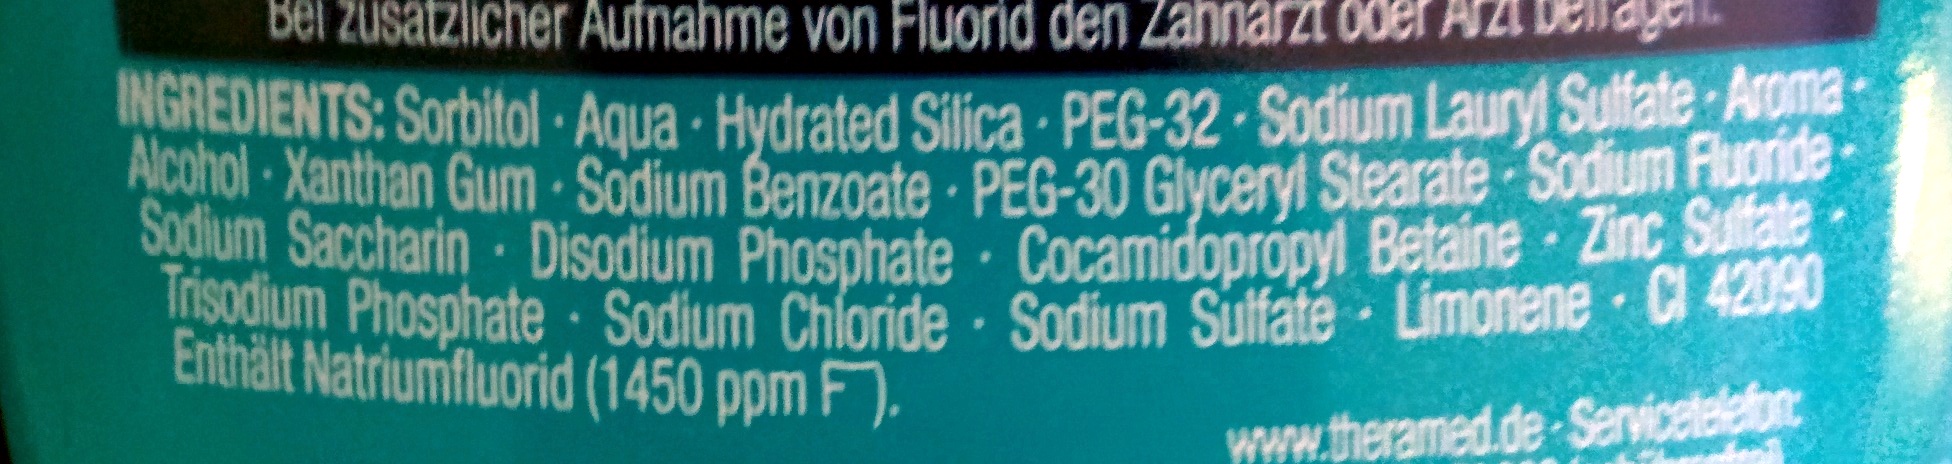 2 in 1 - Zahncreme + Mundspülung - Original - Ingredients